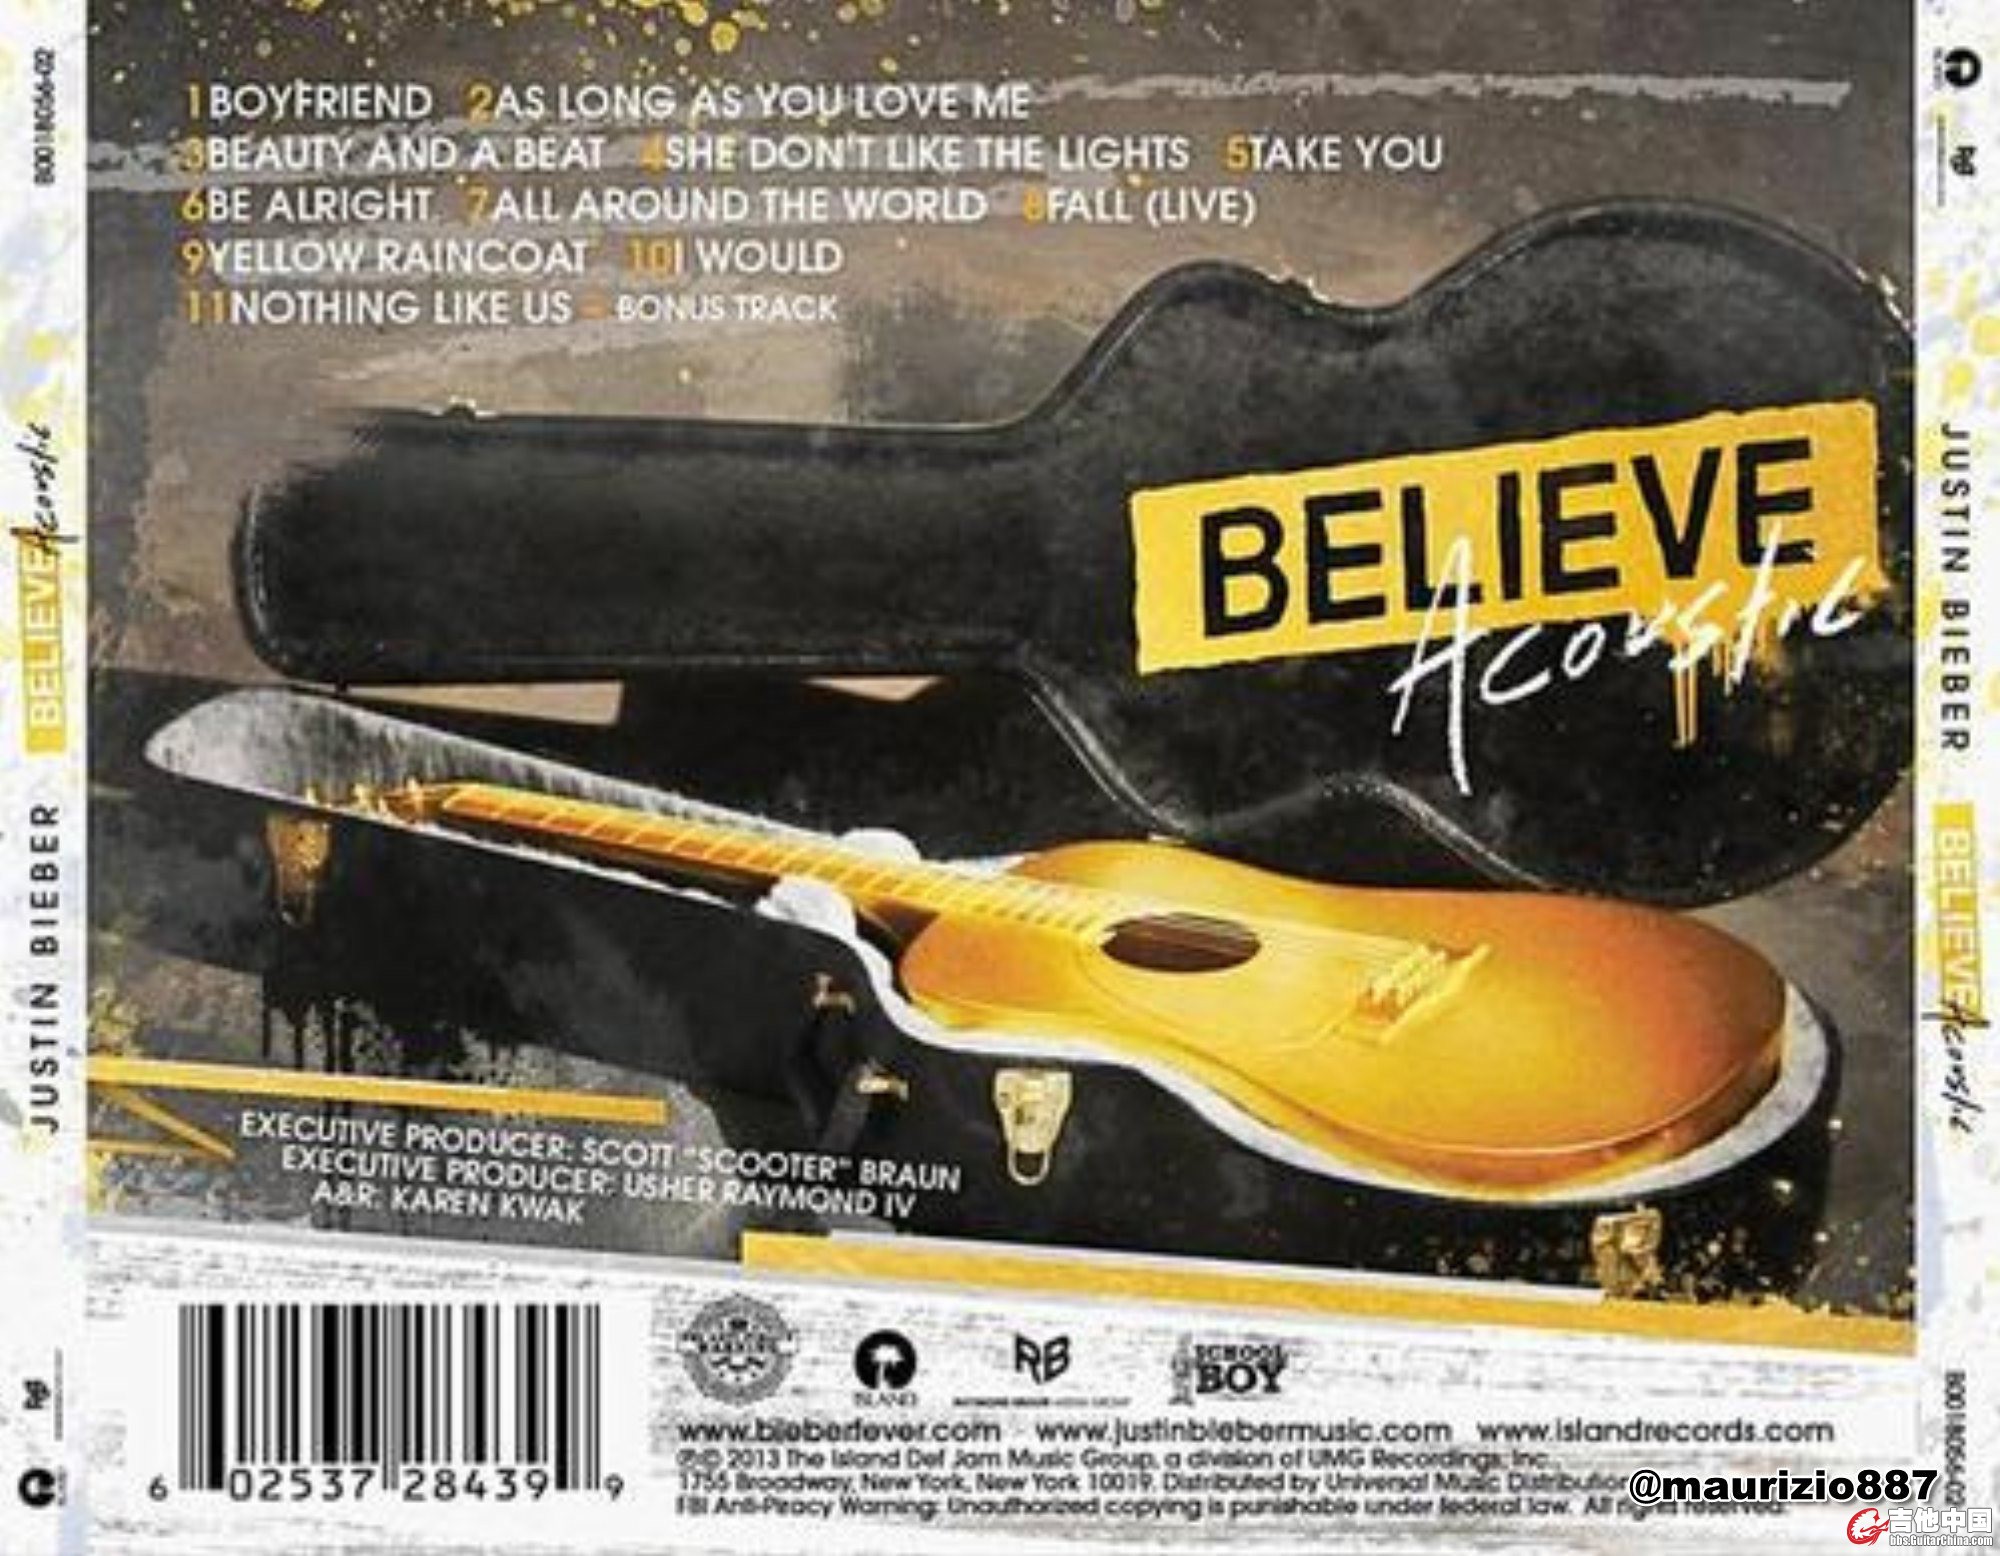 Justin Bieber - Believe